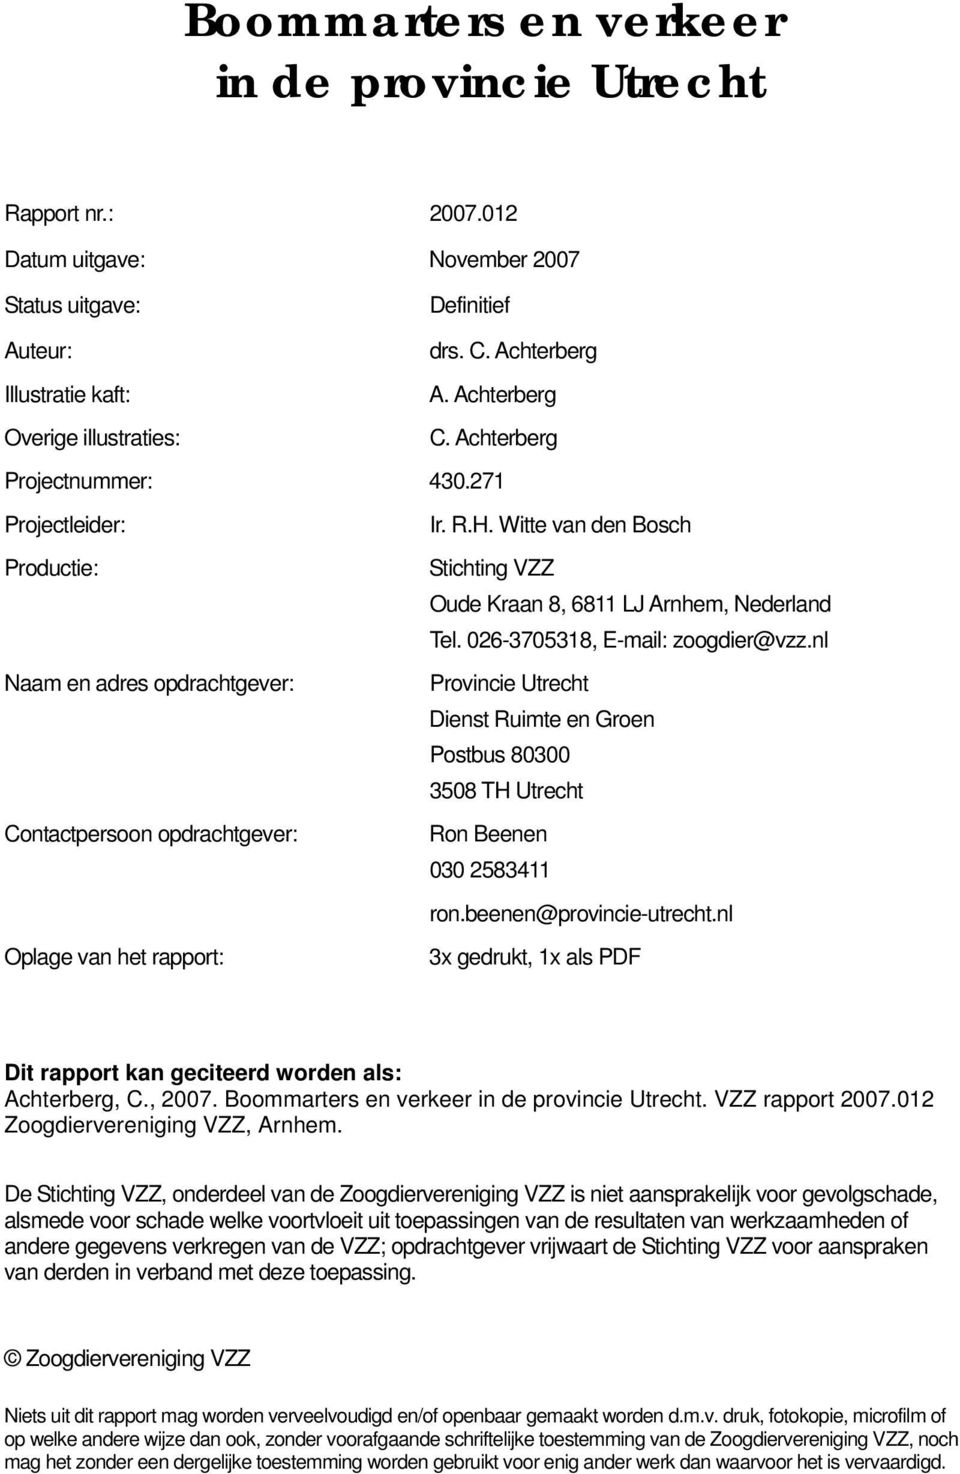 026-3705318, E-mail: zoogdier@vzz.nl Naam en adres opdrachtgever: Provincie Utrecht Dienst Ruimte en Groen Postbus 80300 3508 TH Utrecht Contactpersoon opdrachtgever: Ron Beenen 030 2583411 ron.